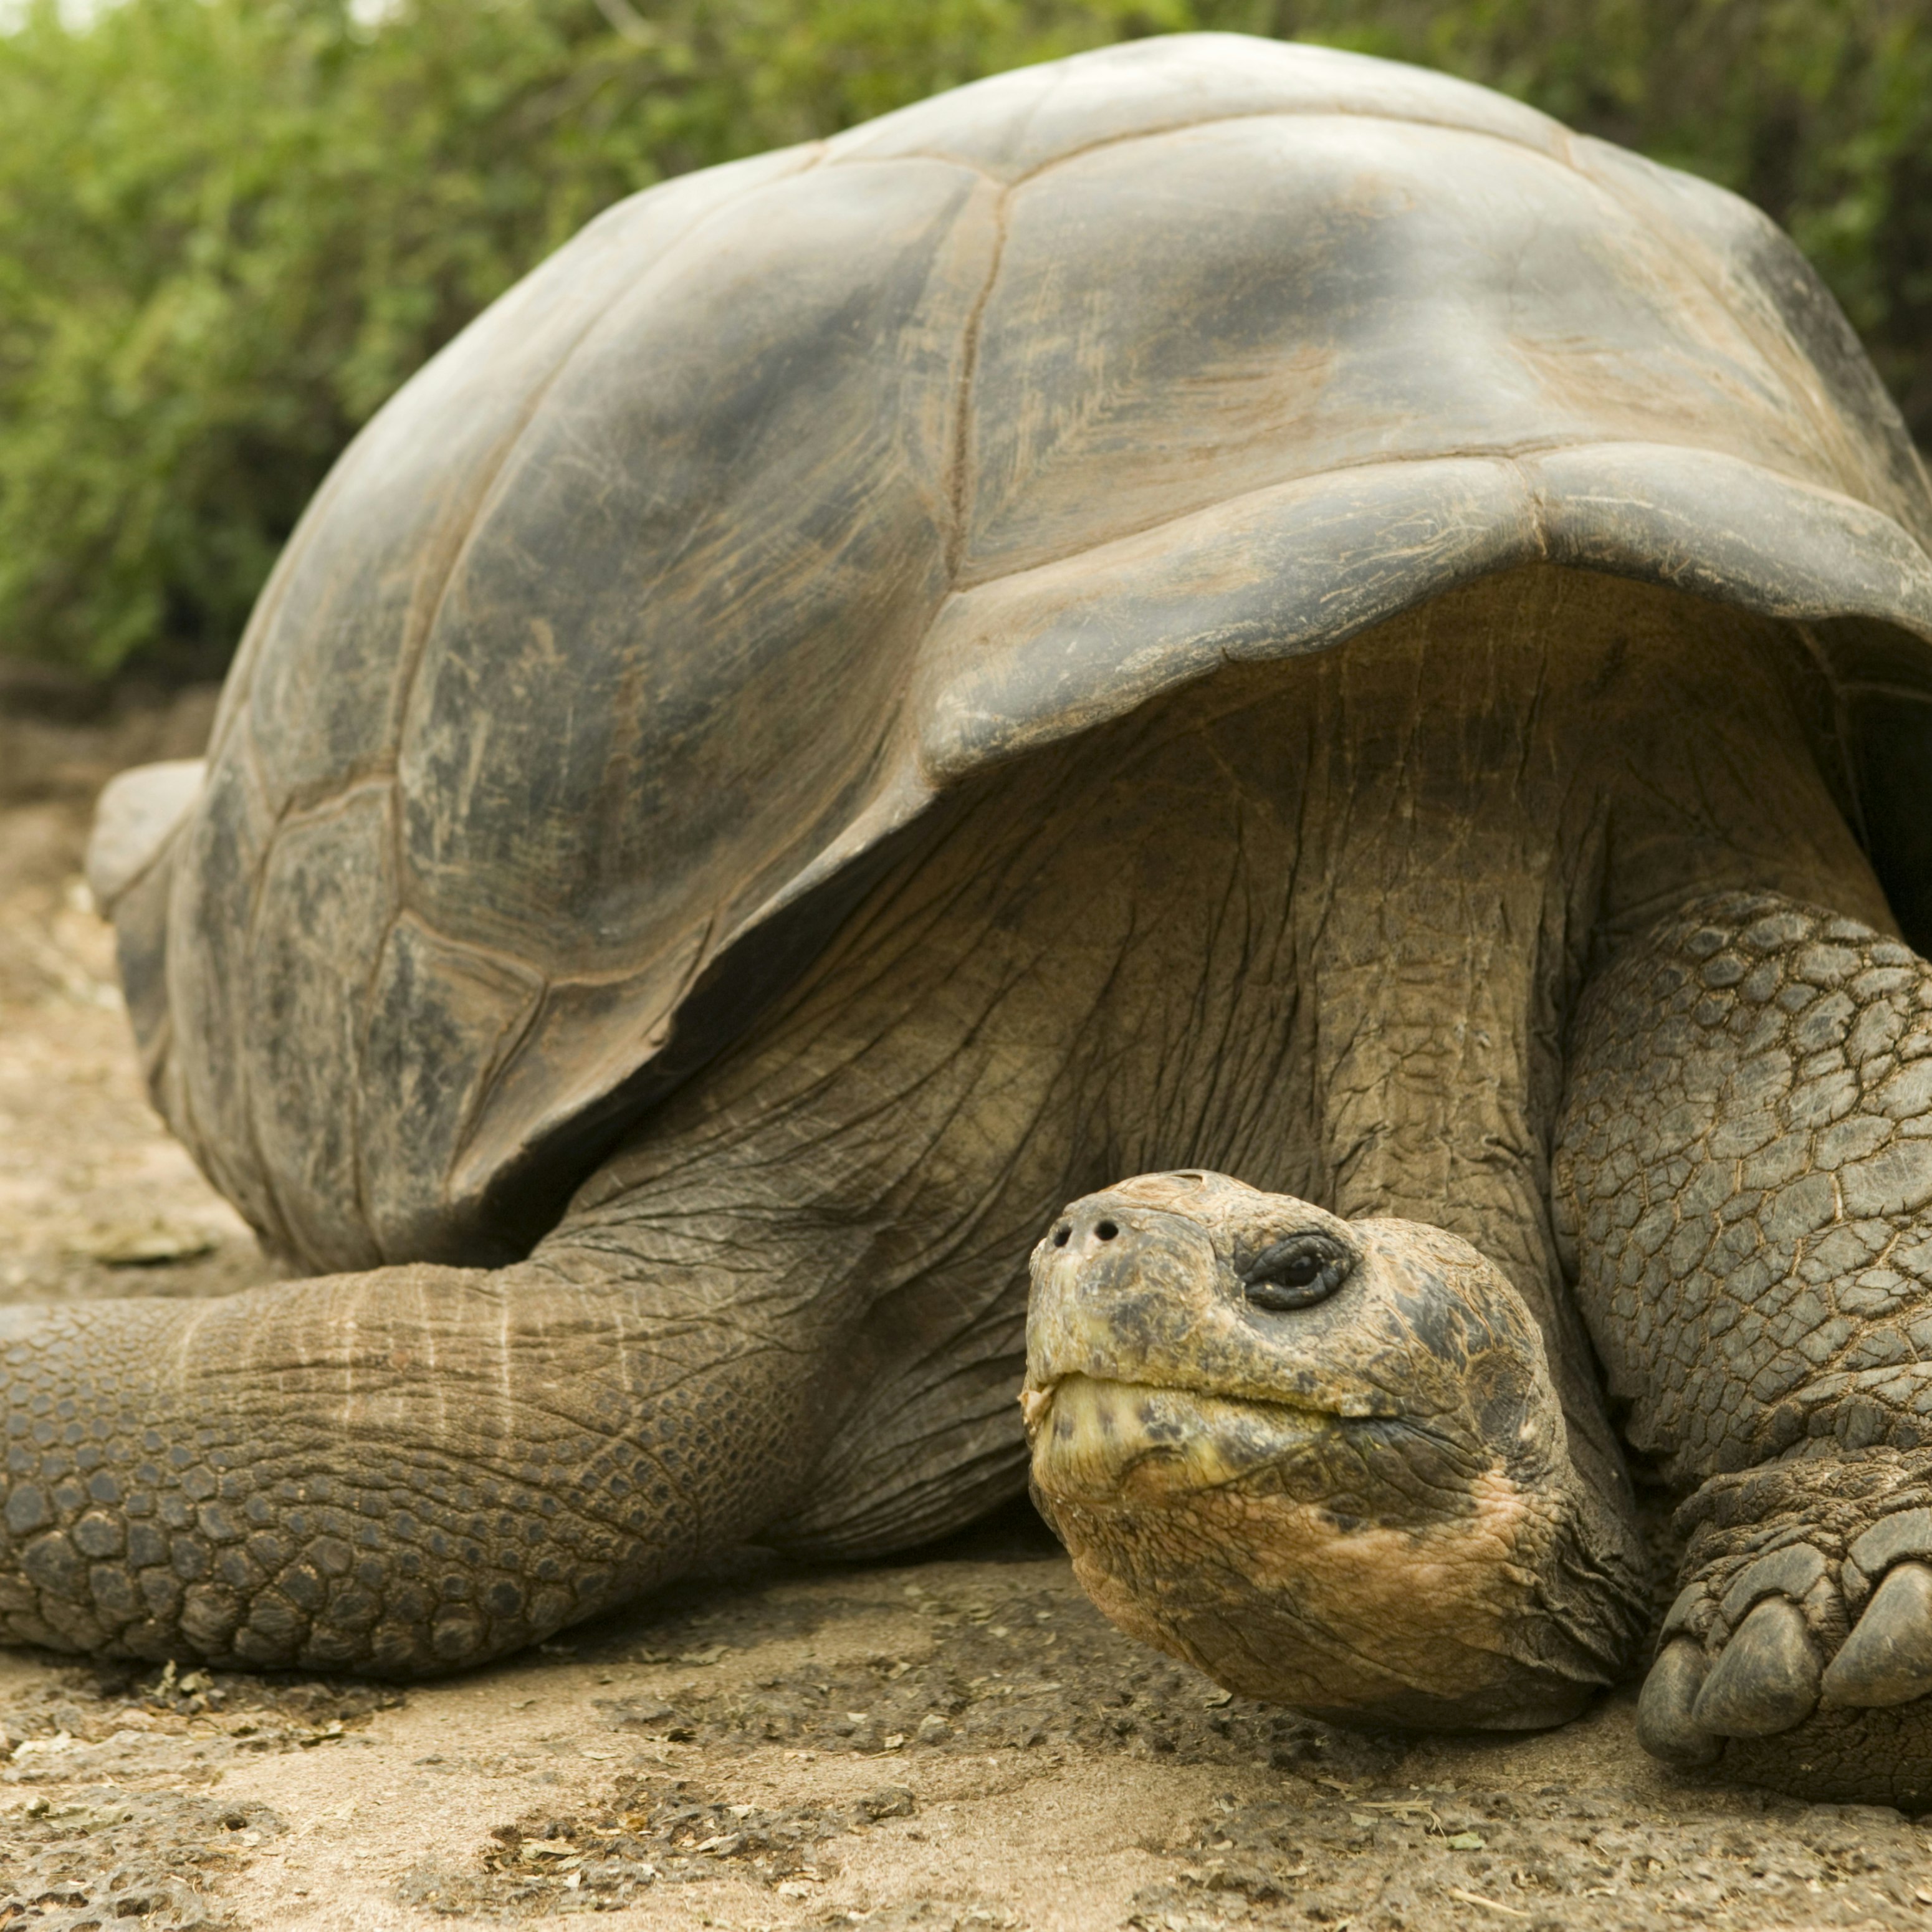 Ecuador, Galapagos Islands, Galapagos giant tortoise